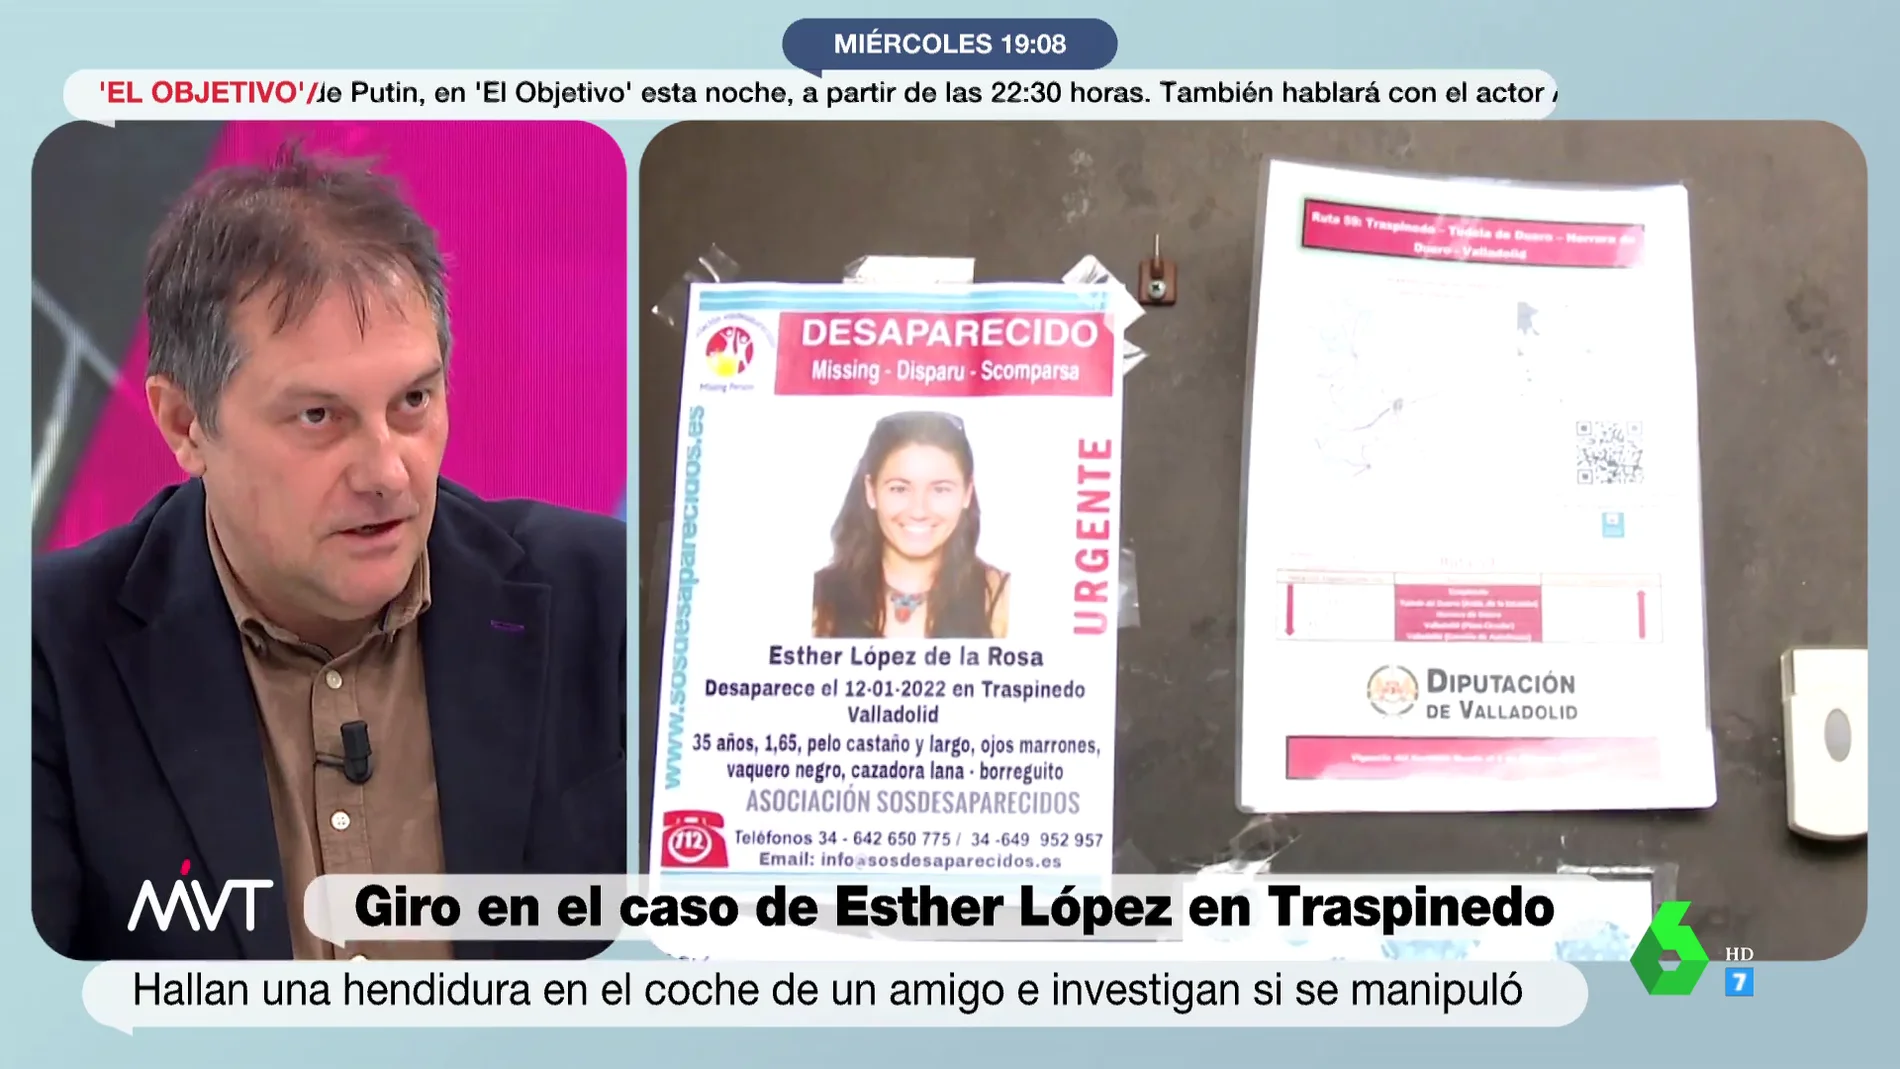 Los datos que sitúan a Óscar en el foco de la investigación de la muerte de Esther López: "No fue a trabajar y lavó el coche"